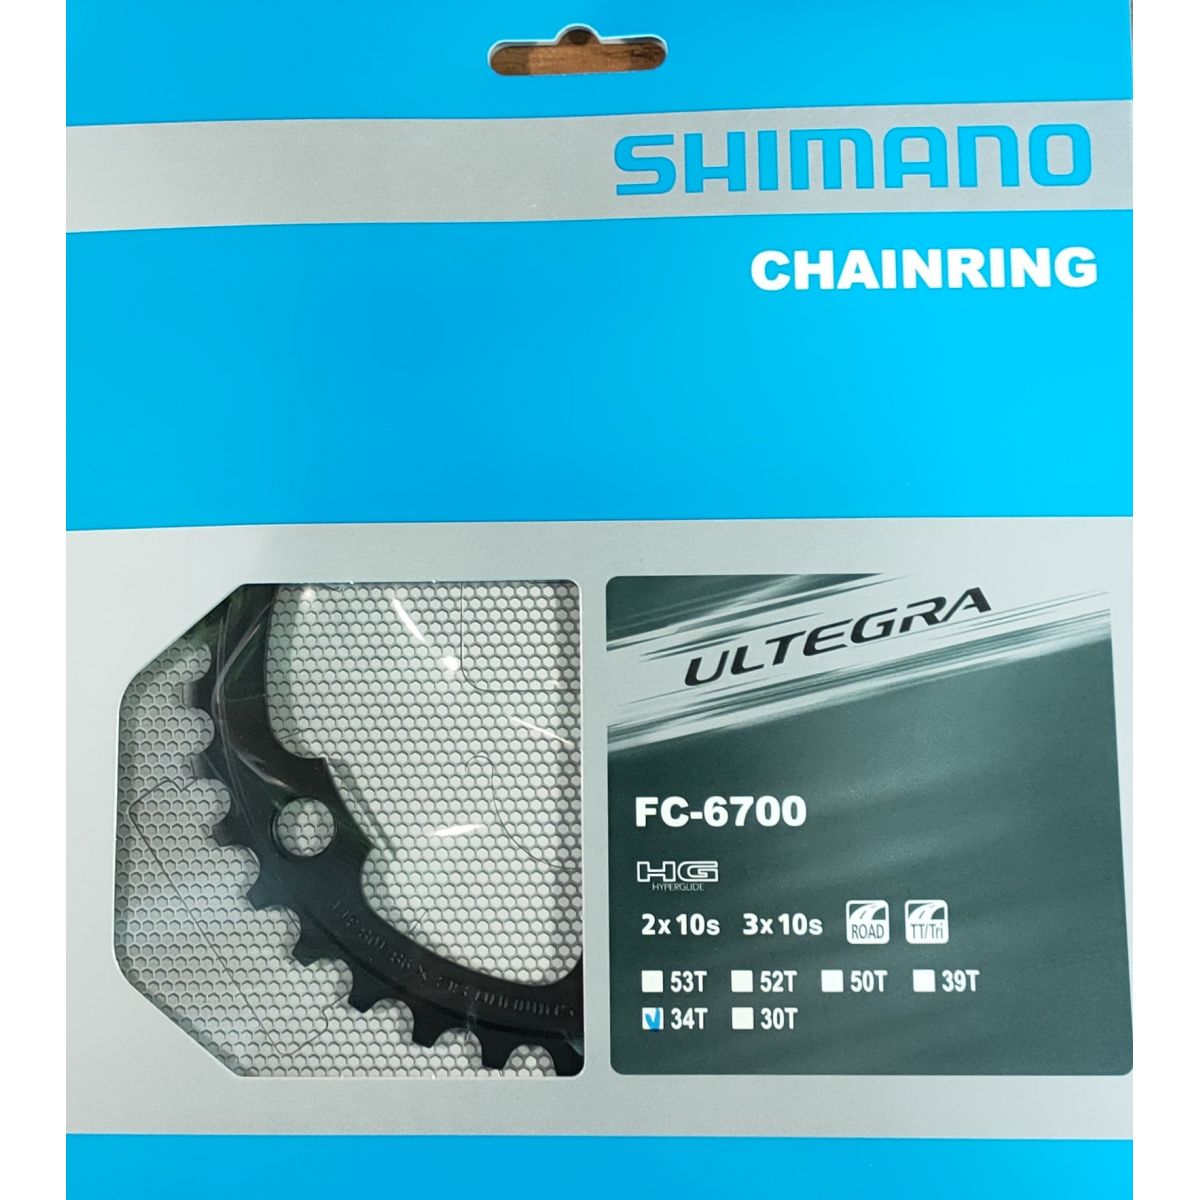 Plato 34 dientes para bielas Shimano Ultegra FC-6750G | Y1LL34010 | recambio original